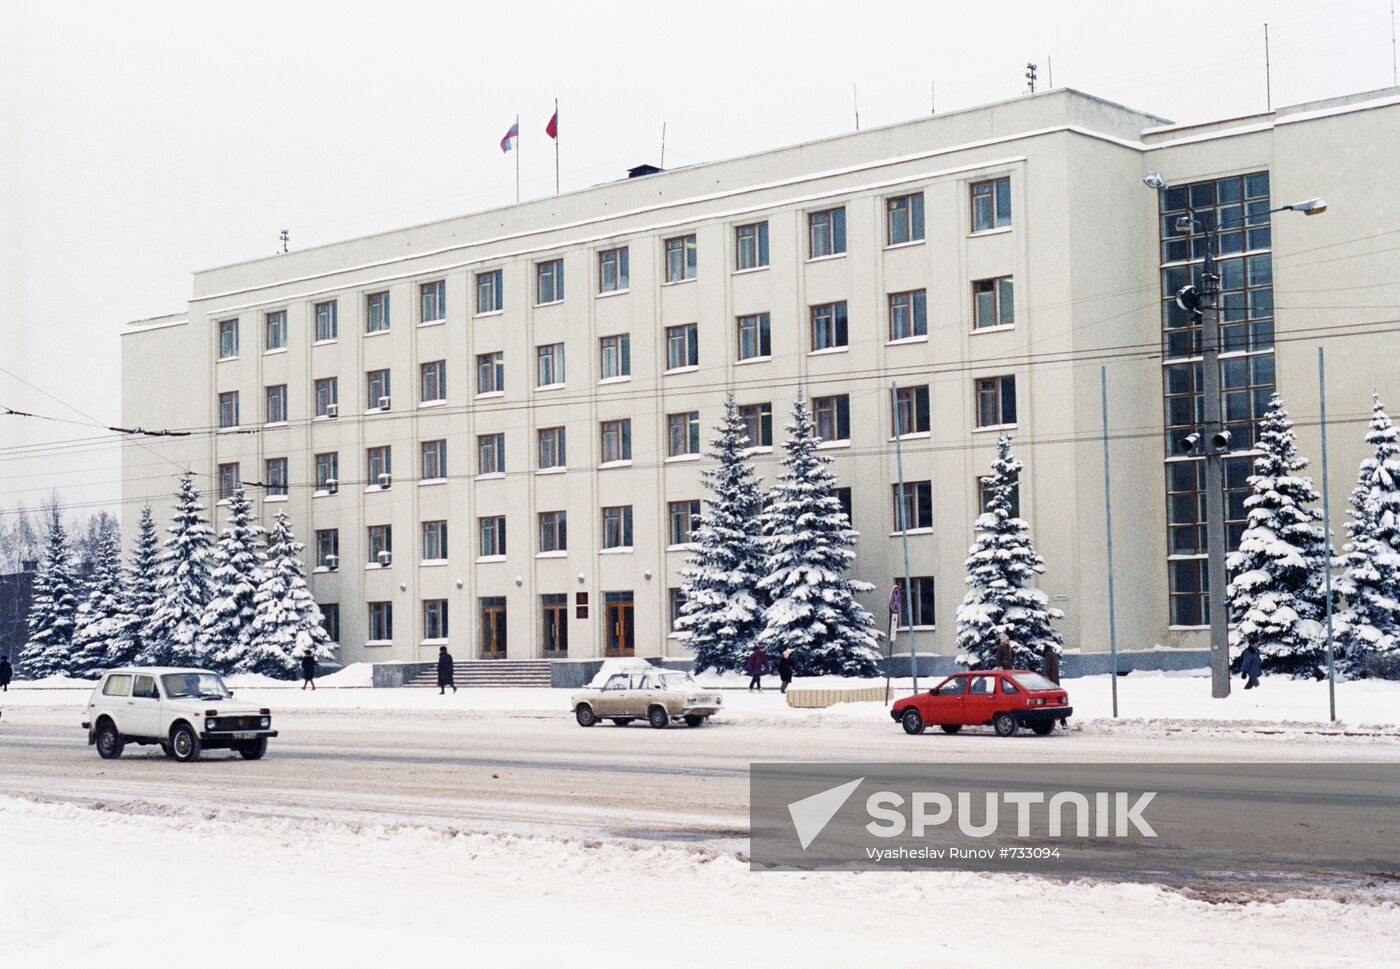 Building of Government of Republic of Udmurtia